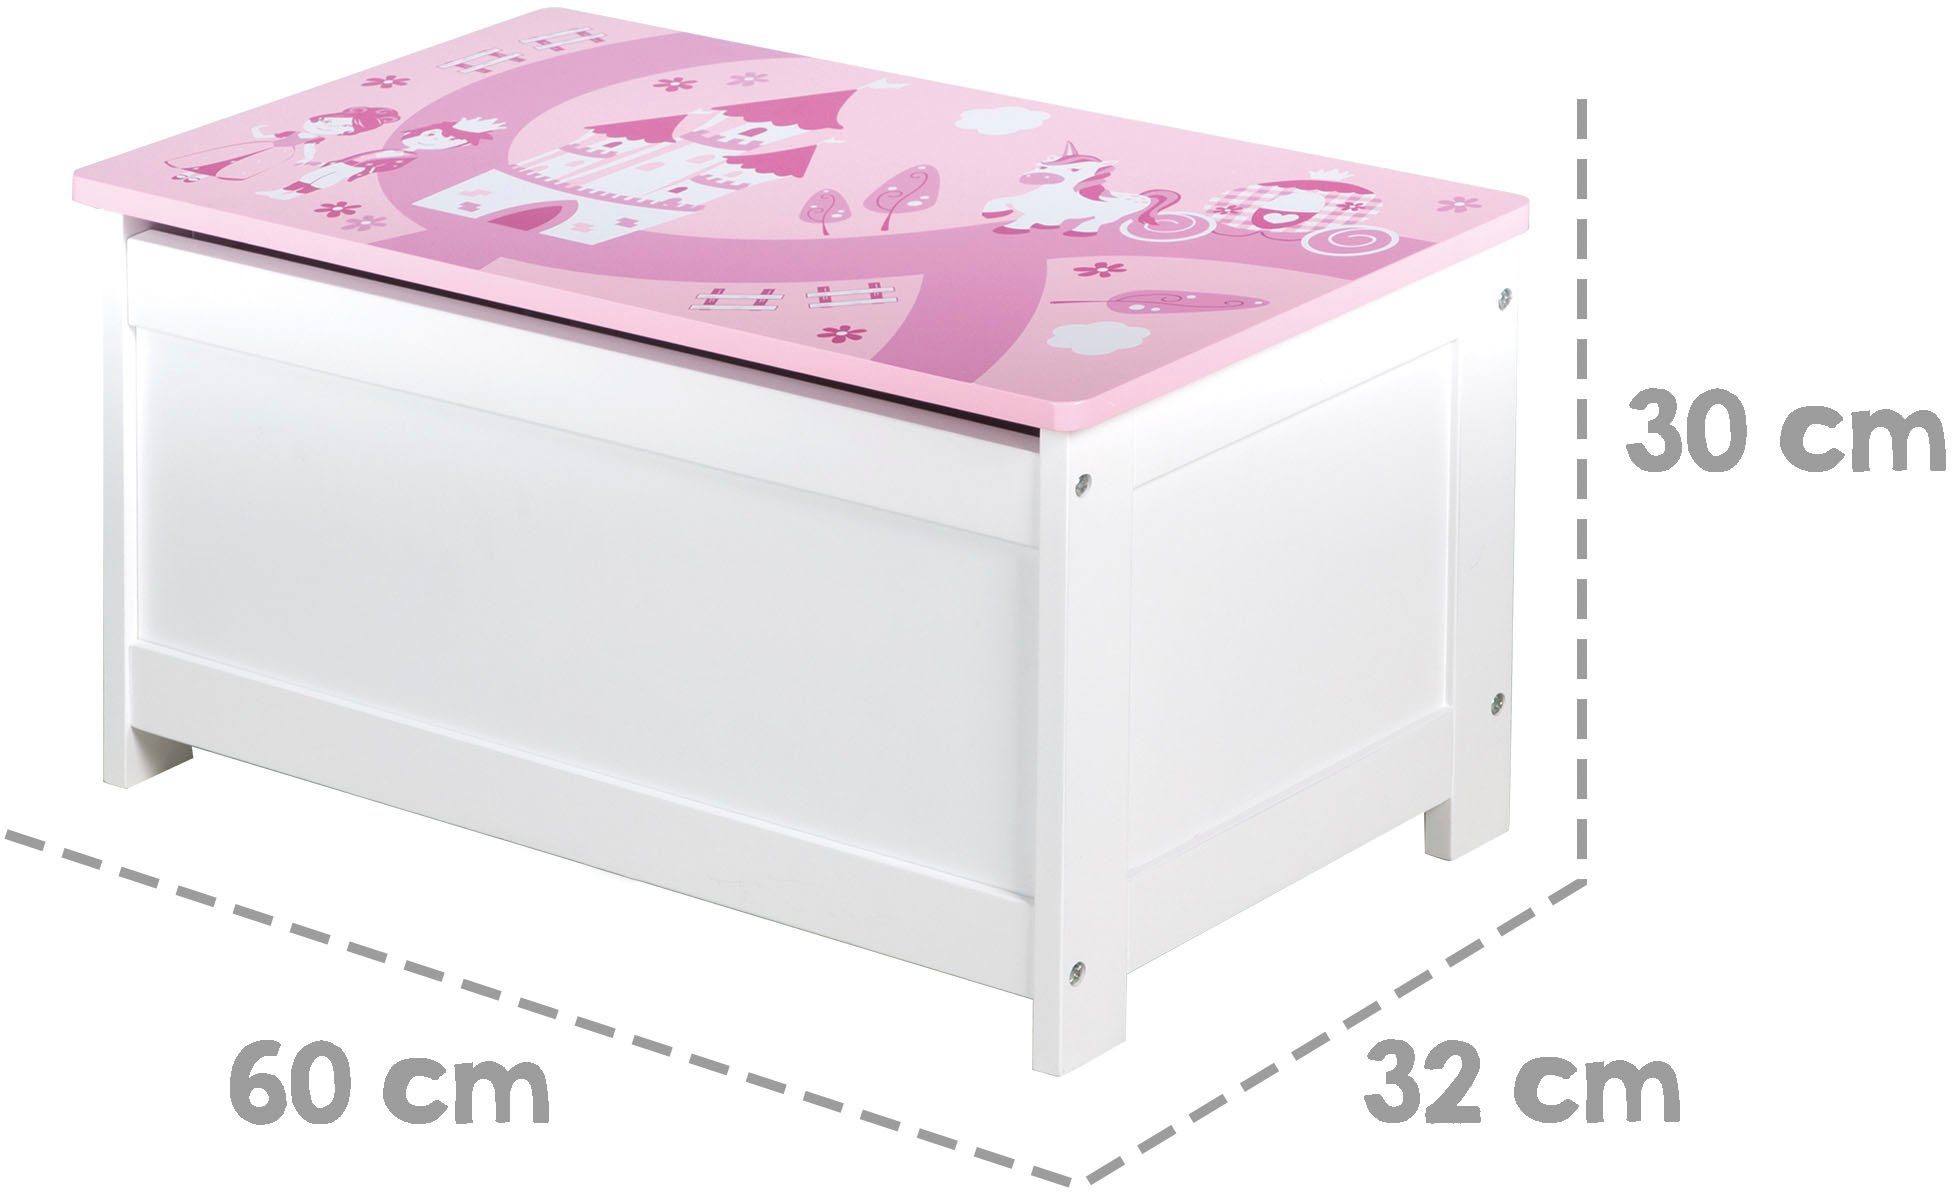 Deckelbremse; rosa/pink, roba® Kinderzimmer mit Krone, Truhe fürs